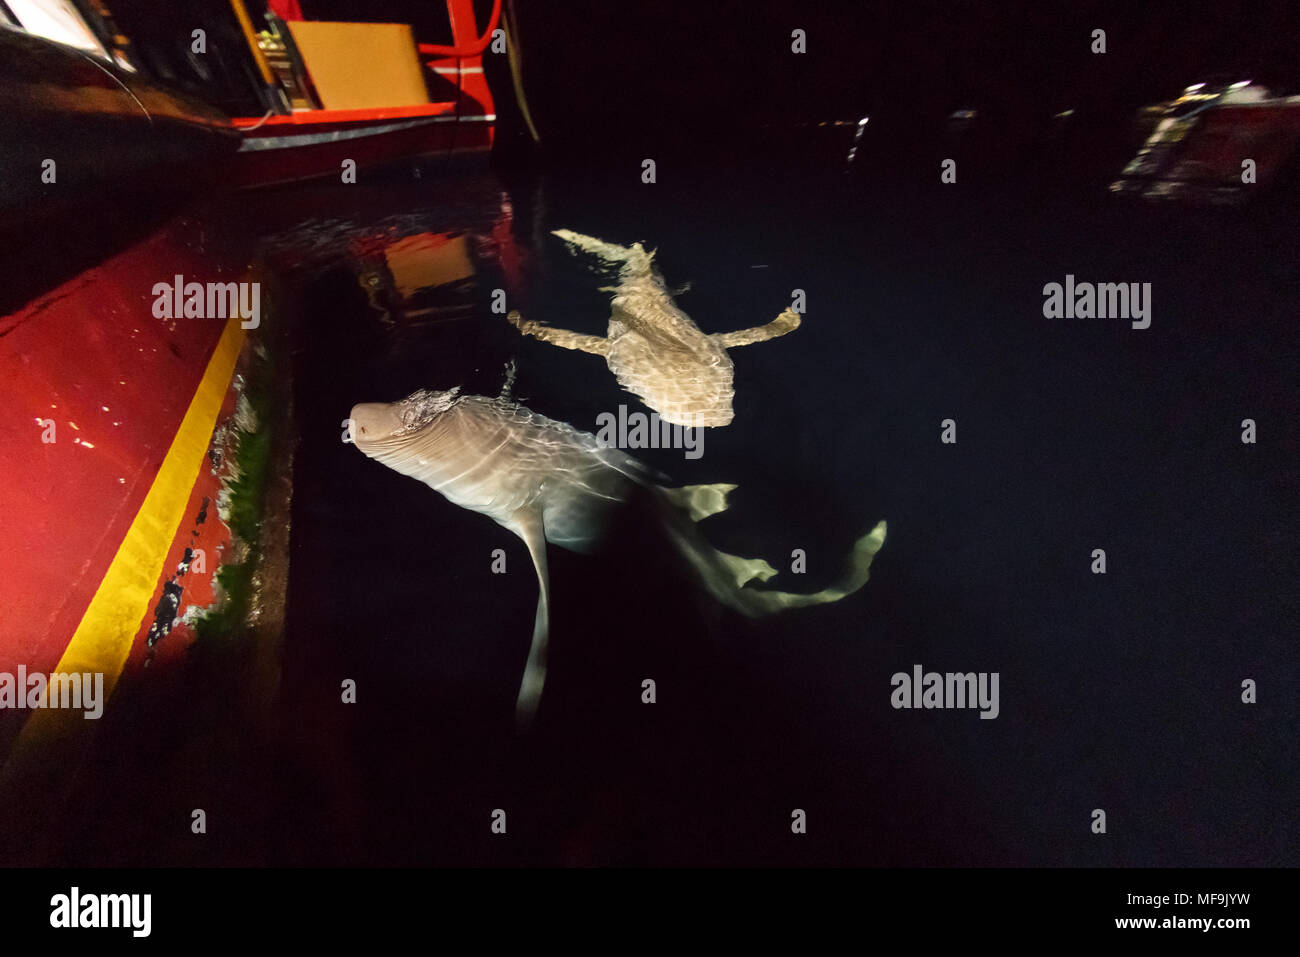 2 curieux requins nourrissons, carcharias taurus, nagent pour enquêter sur le bateau la nuit Banque D'Images